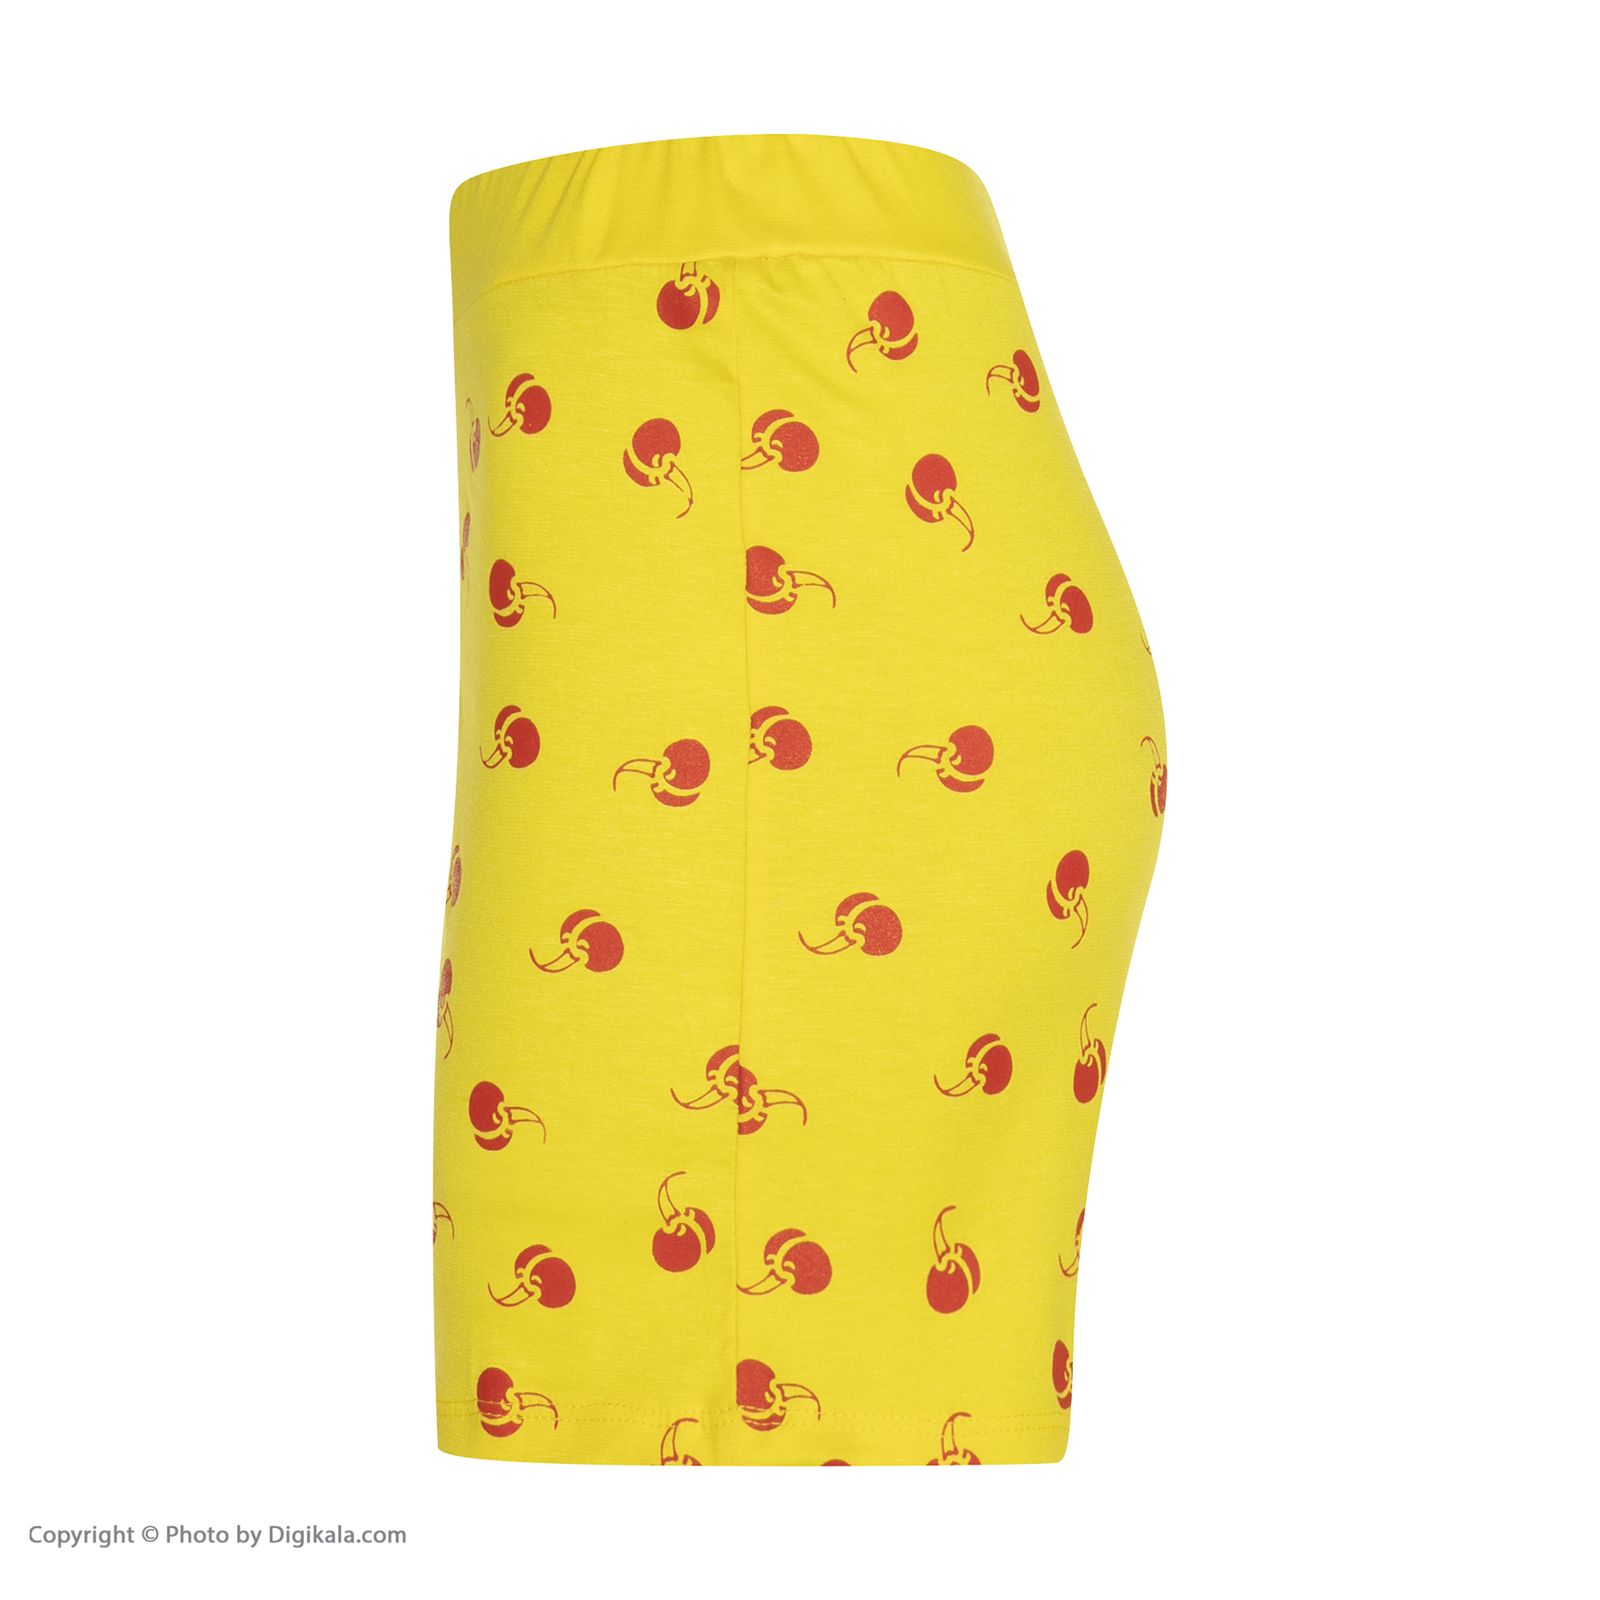 ست تی شرت و شلوارک زنانه افراتین مدل آلبالو کد 6557 رنگ زرد -  - 8